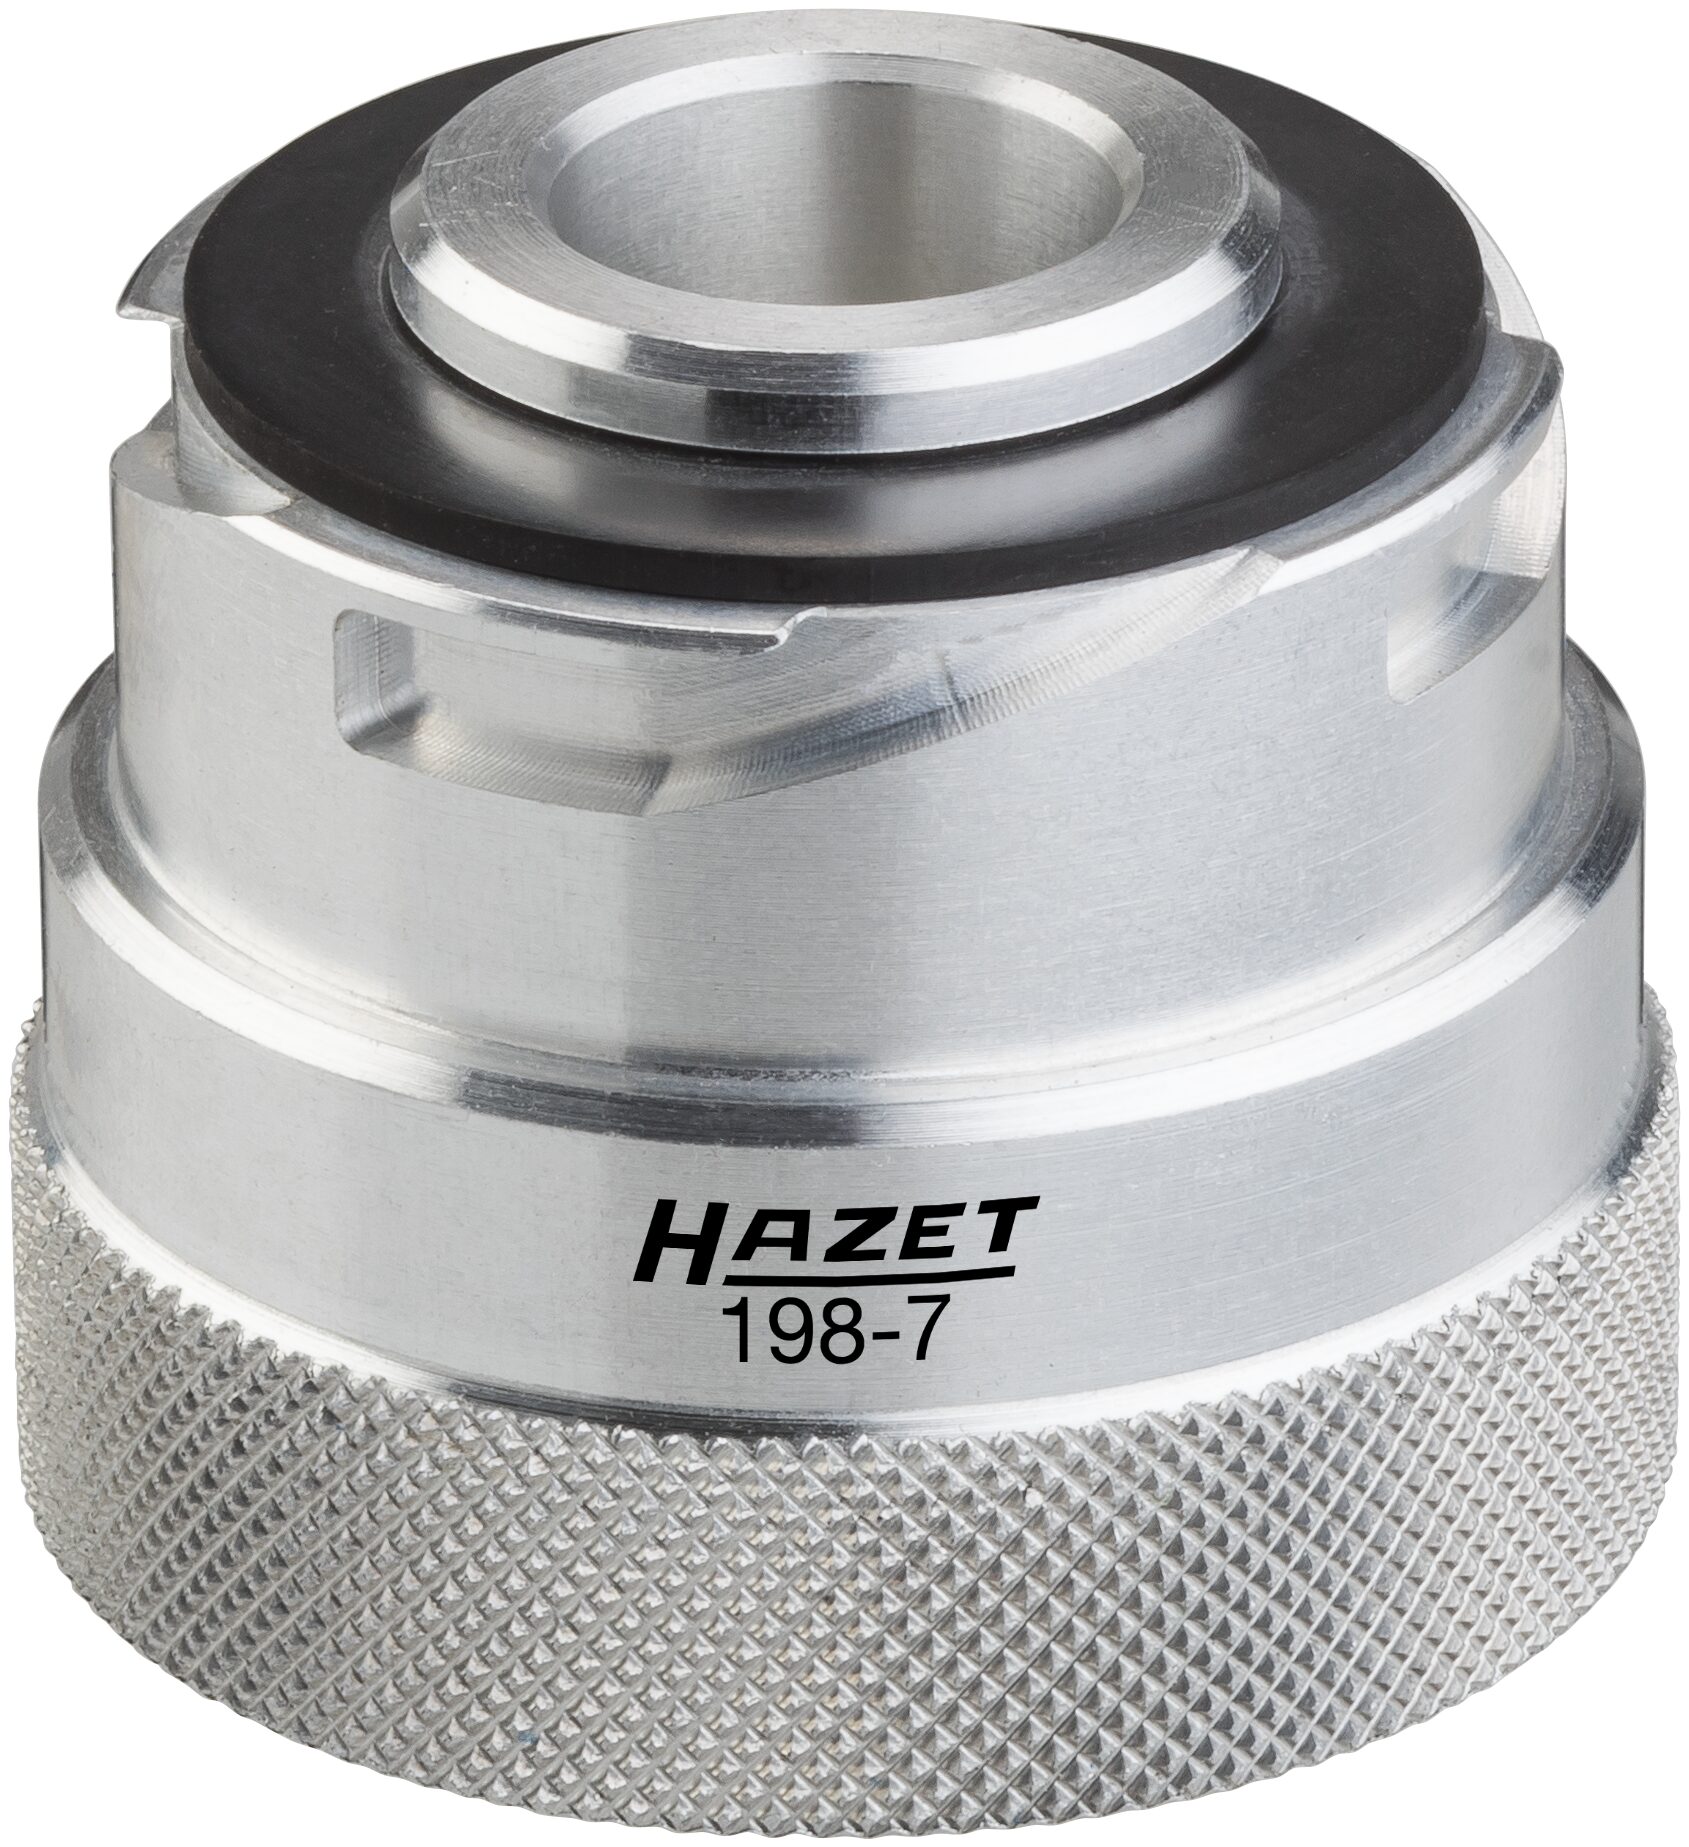 HAZET Motoröl Einfüll-Adapter 198-7